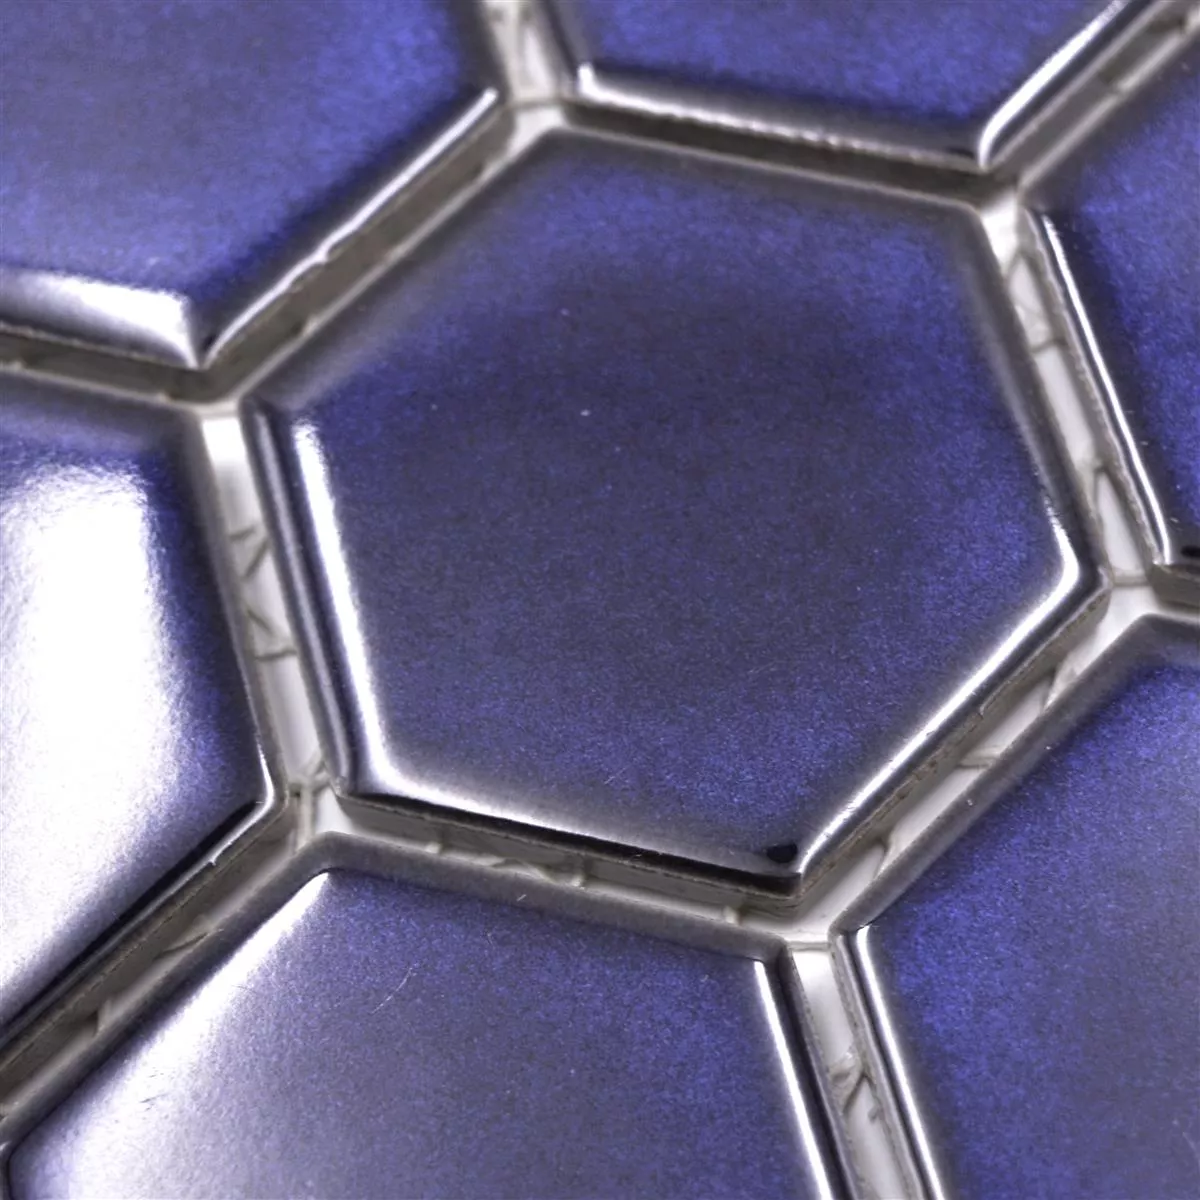 Échantillon de Céramique Mosaïque Salomon Hexagone Cobalt Bleu H51